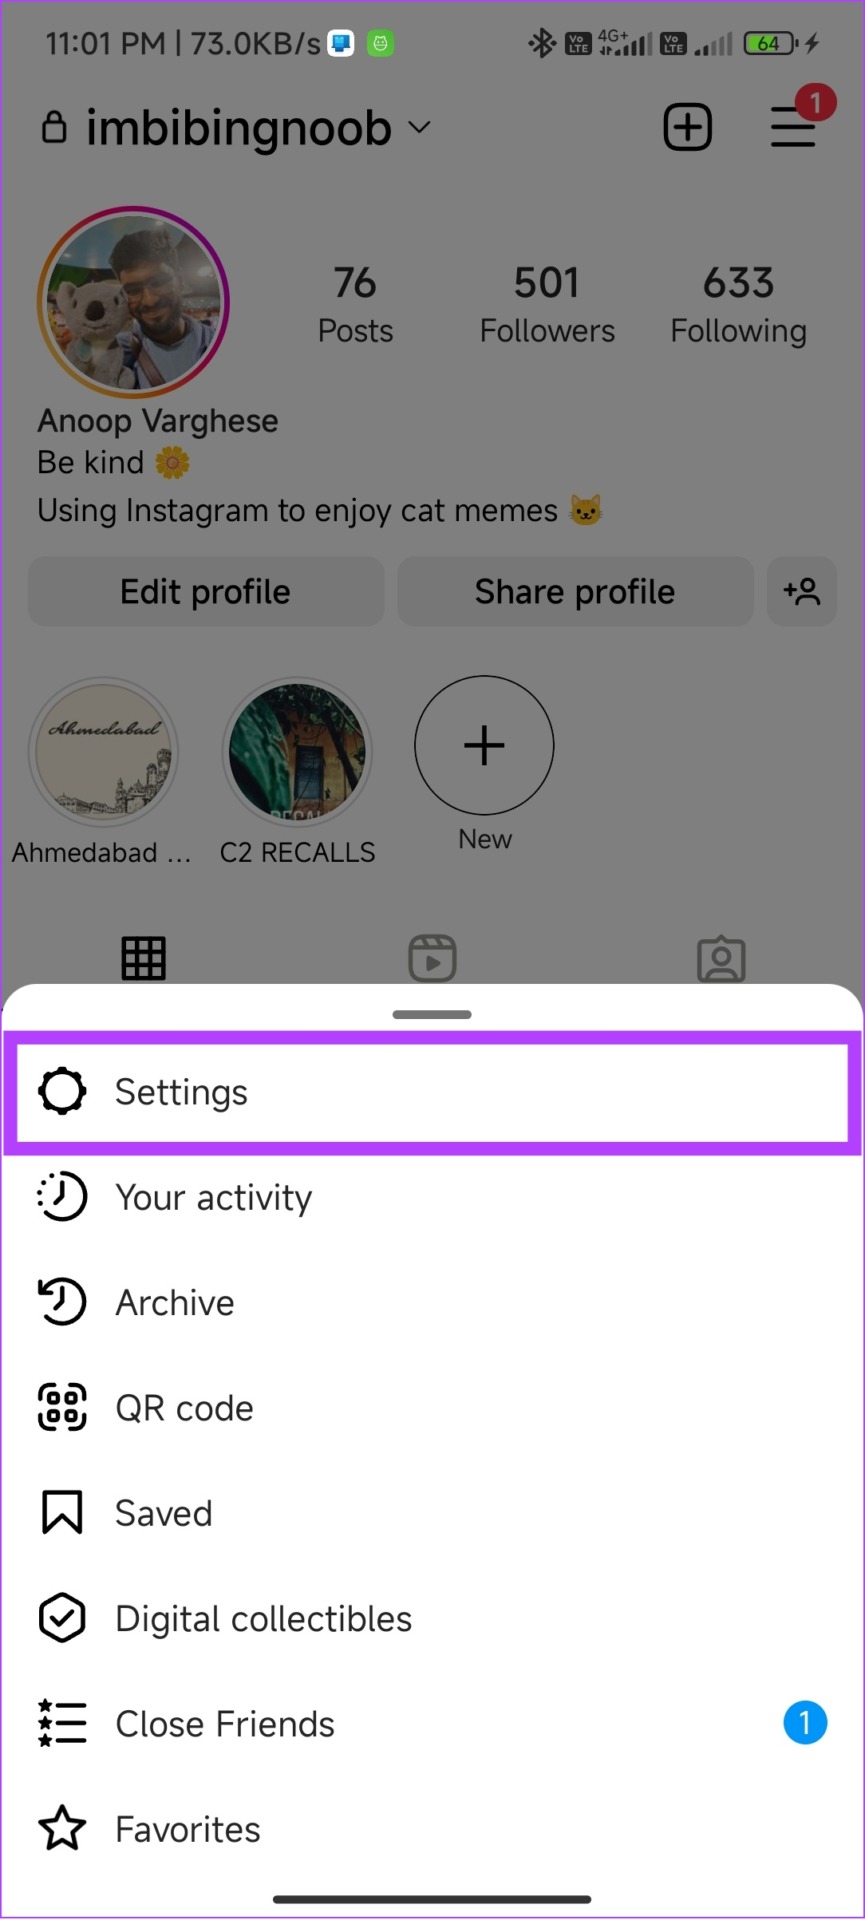 Open settings on Instagram